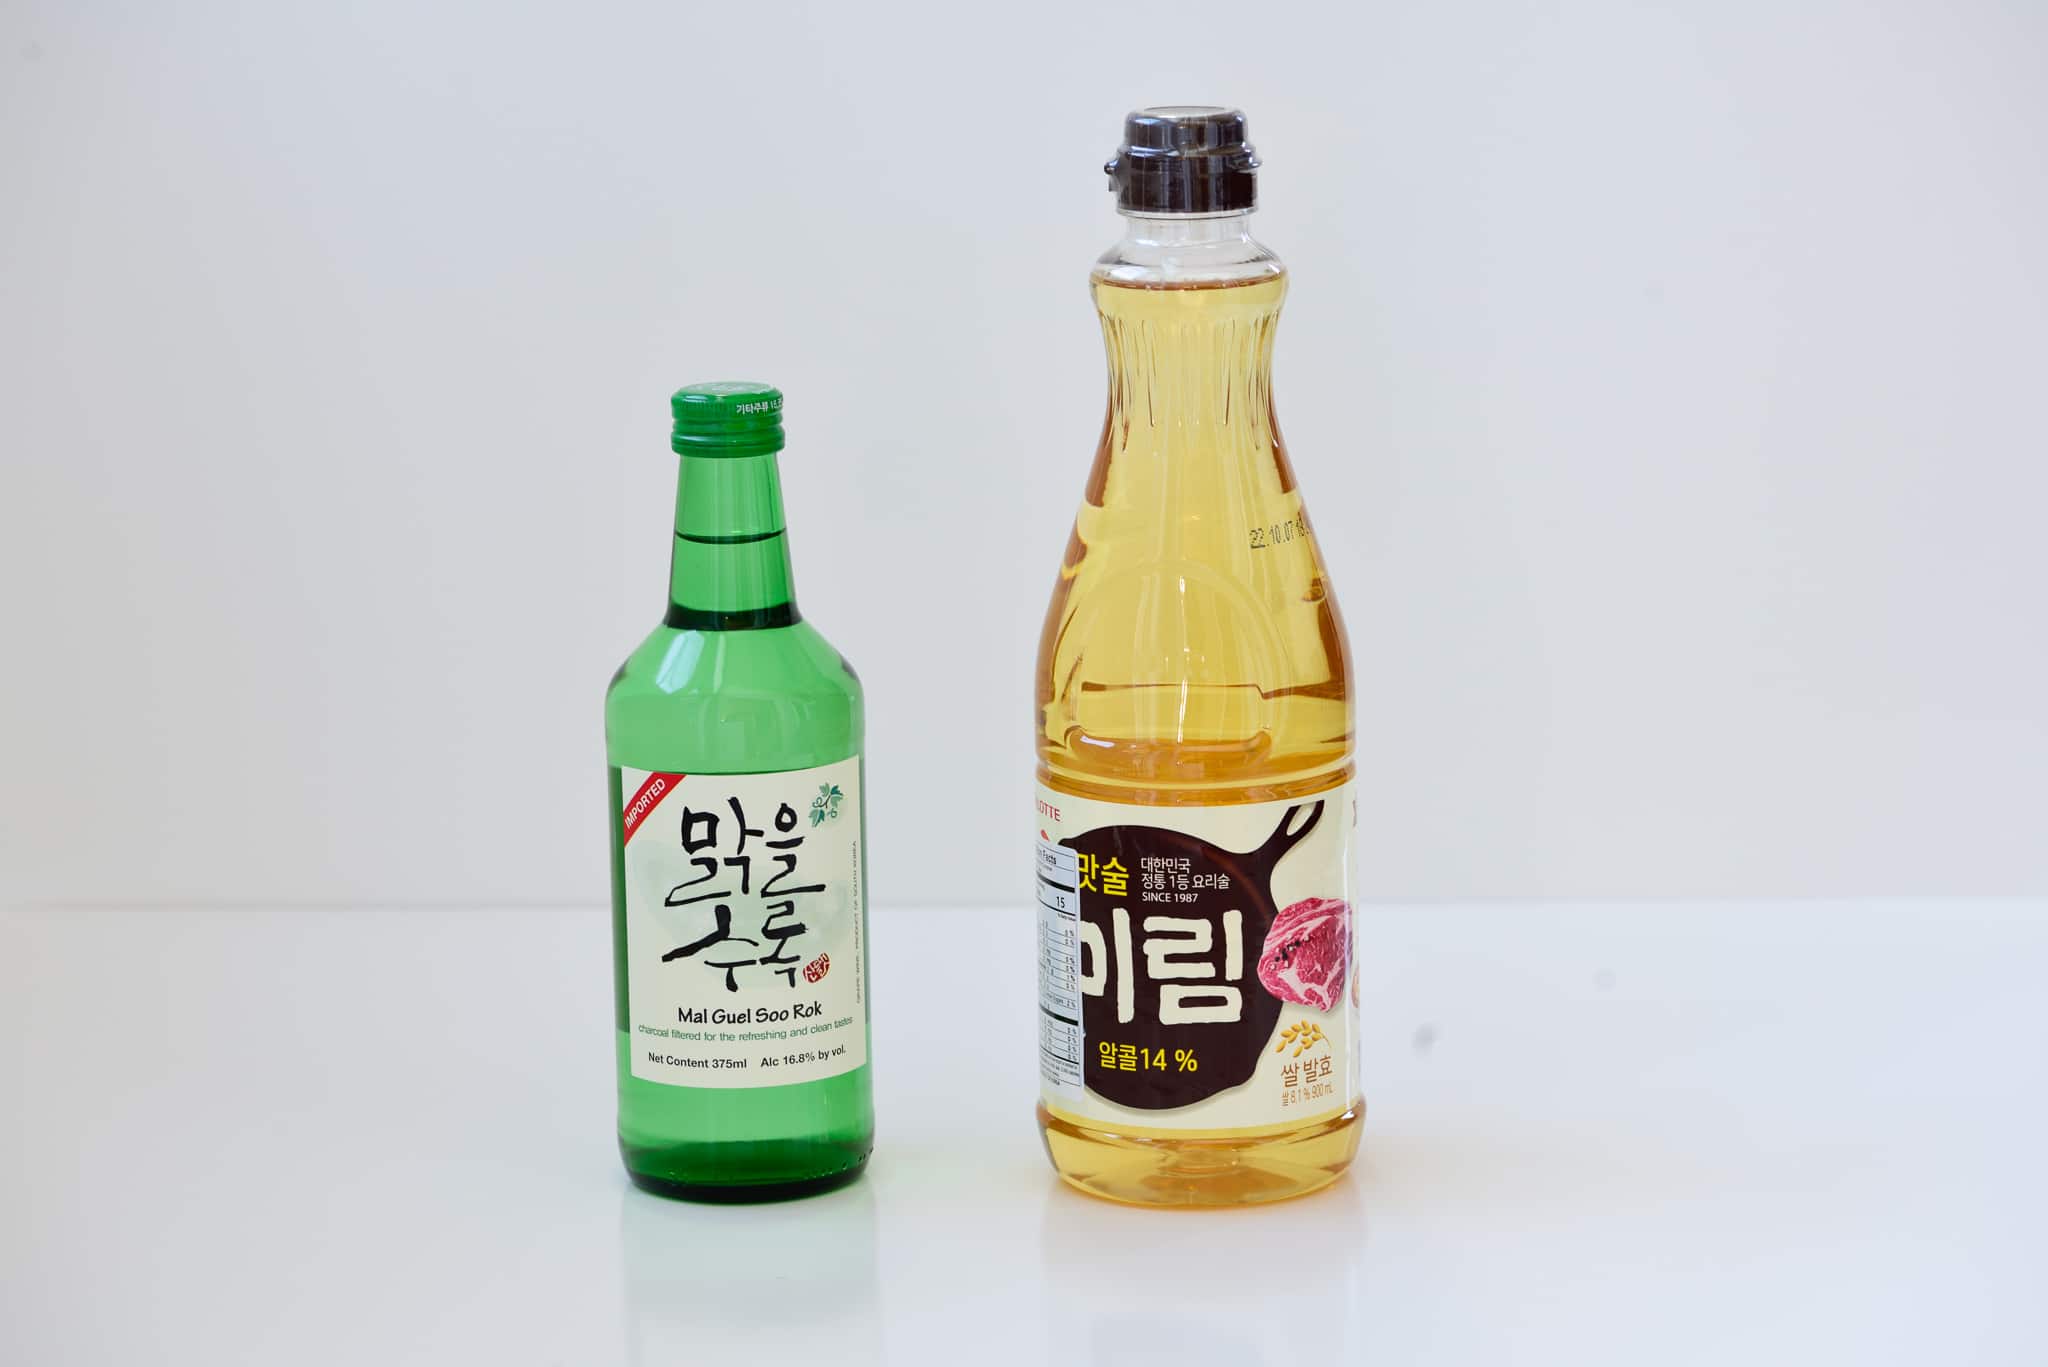 DSC2643 - Korean Essential Seasoning Ingredients